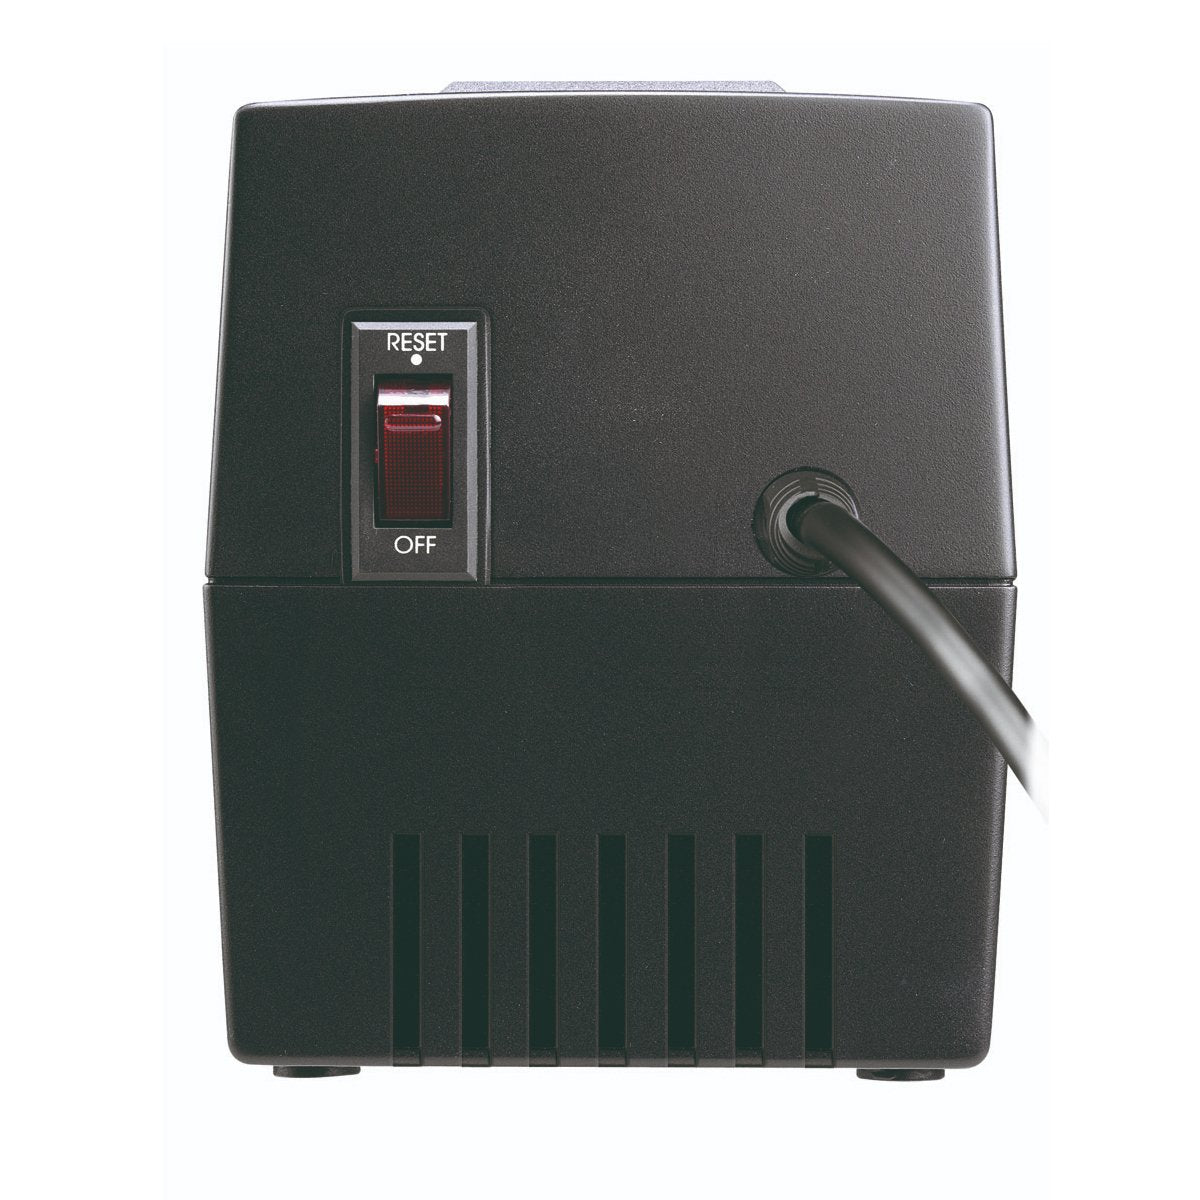 Regulador Koblenz RS-1410, 1400VA / 700 Watts, 8 contactos regulados, 2 leds, desconexion automatica, 3 pasos de regulación